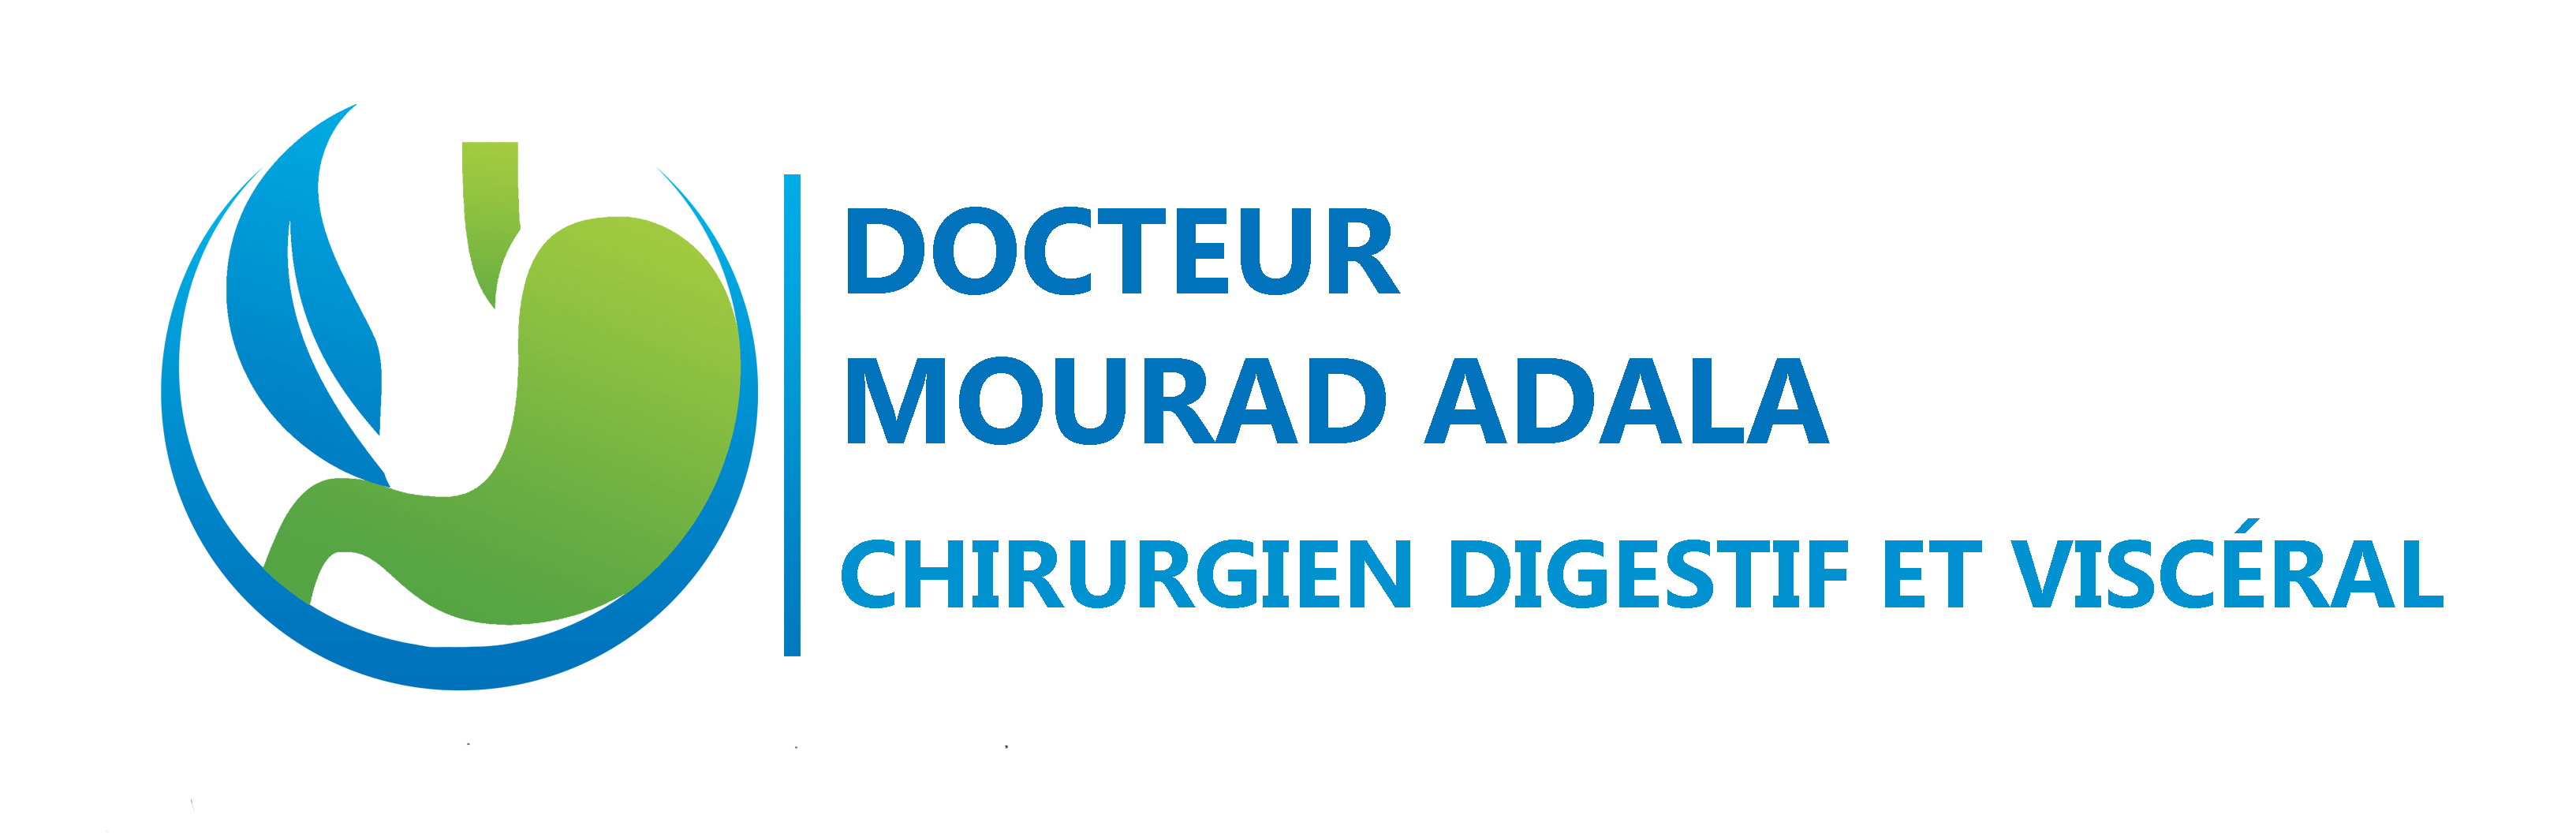 Docteur Mourad Adala